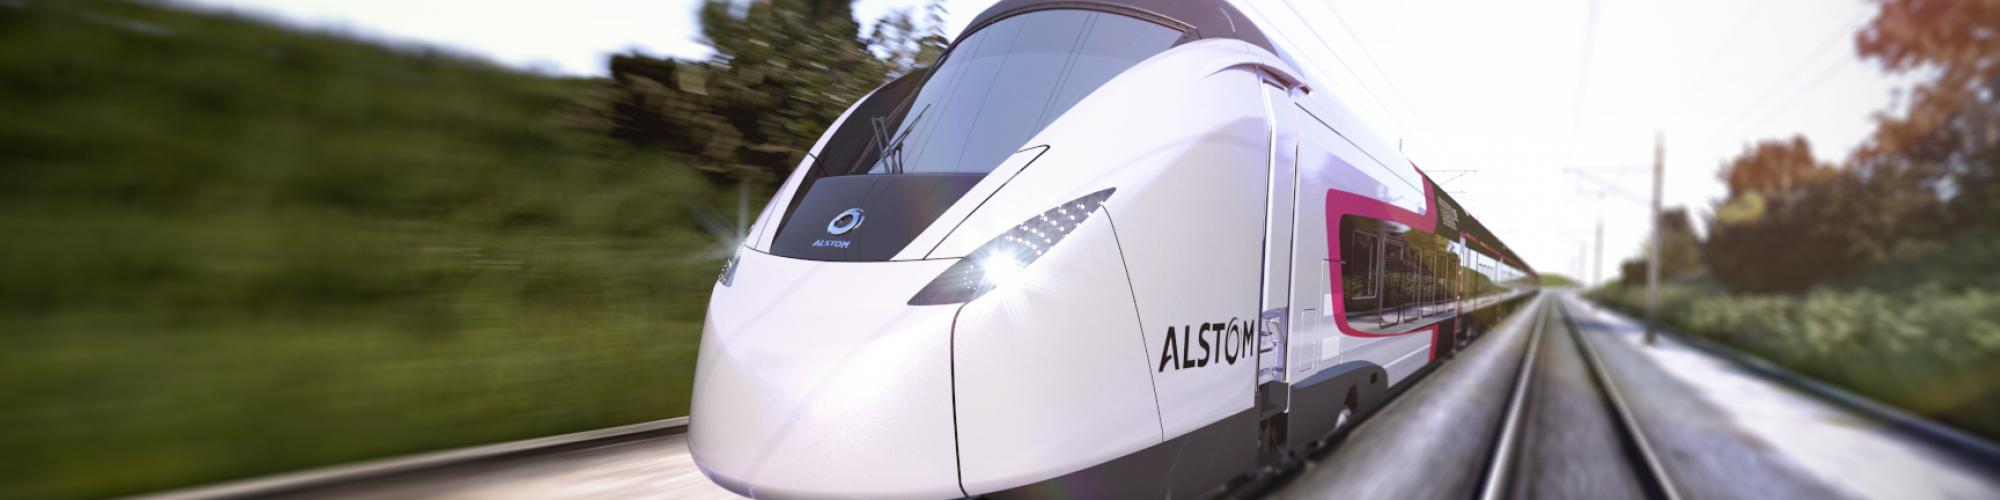 Alstom Transport Deutschland GmbH